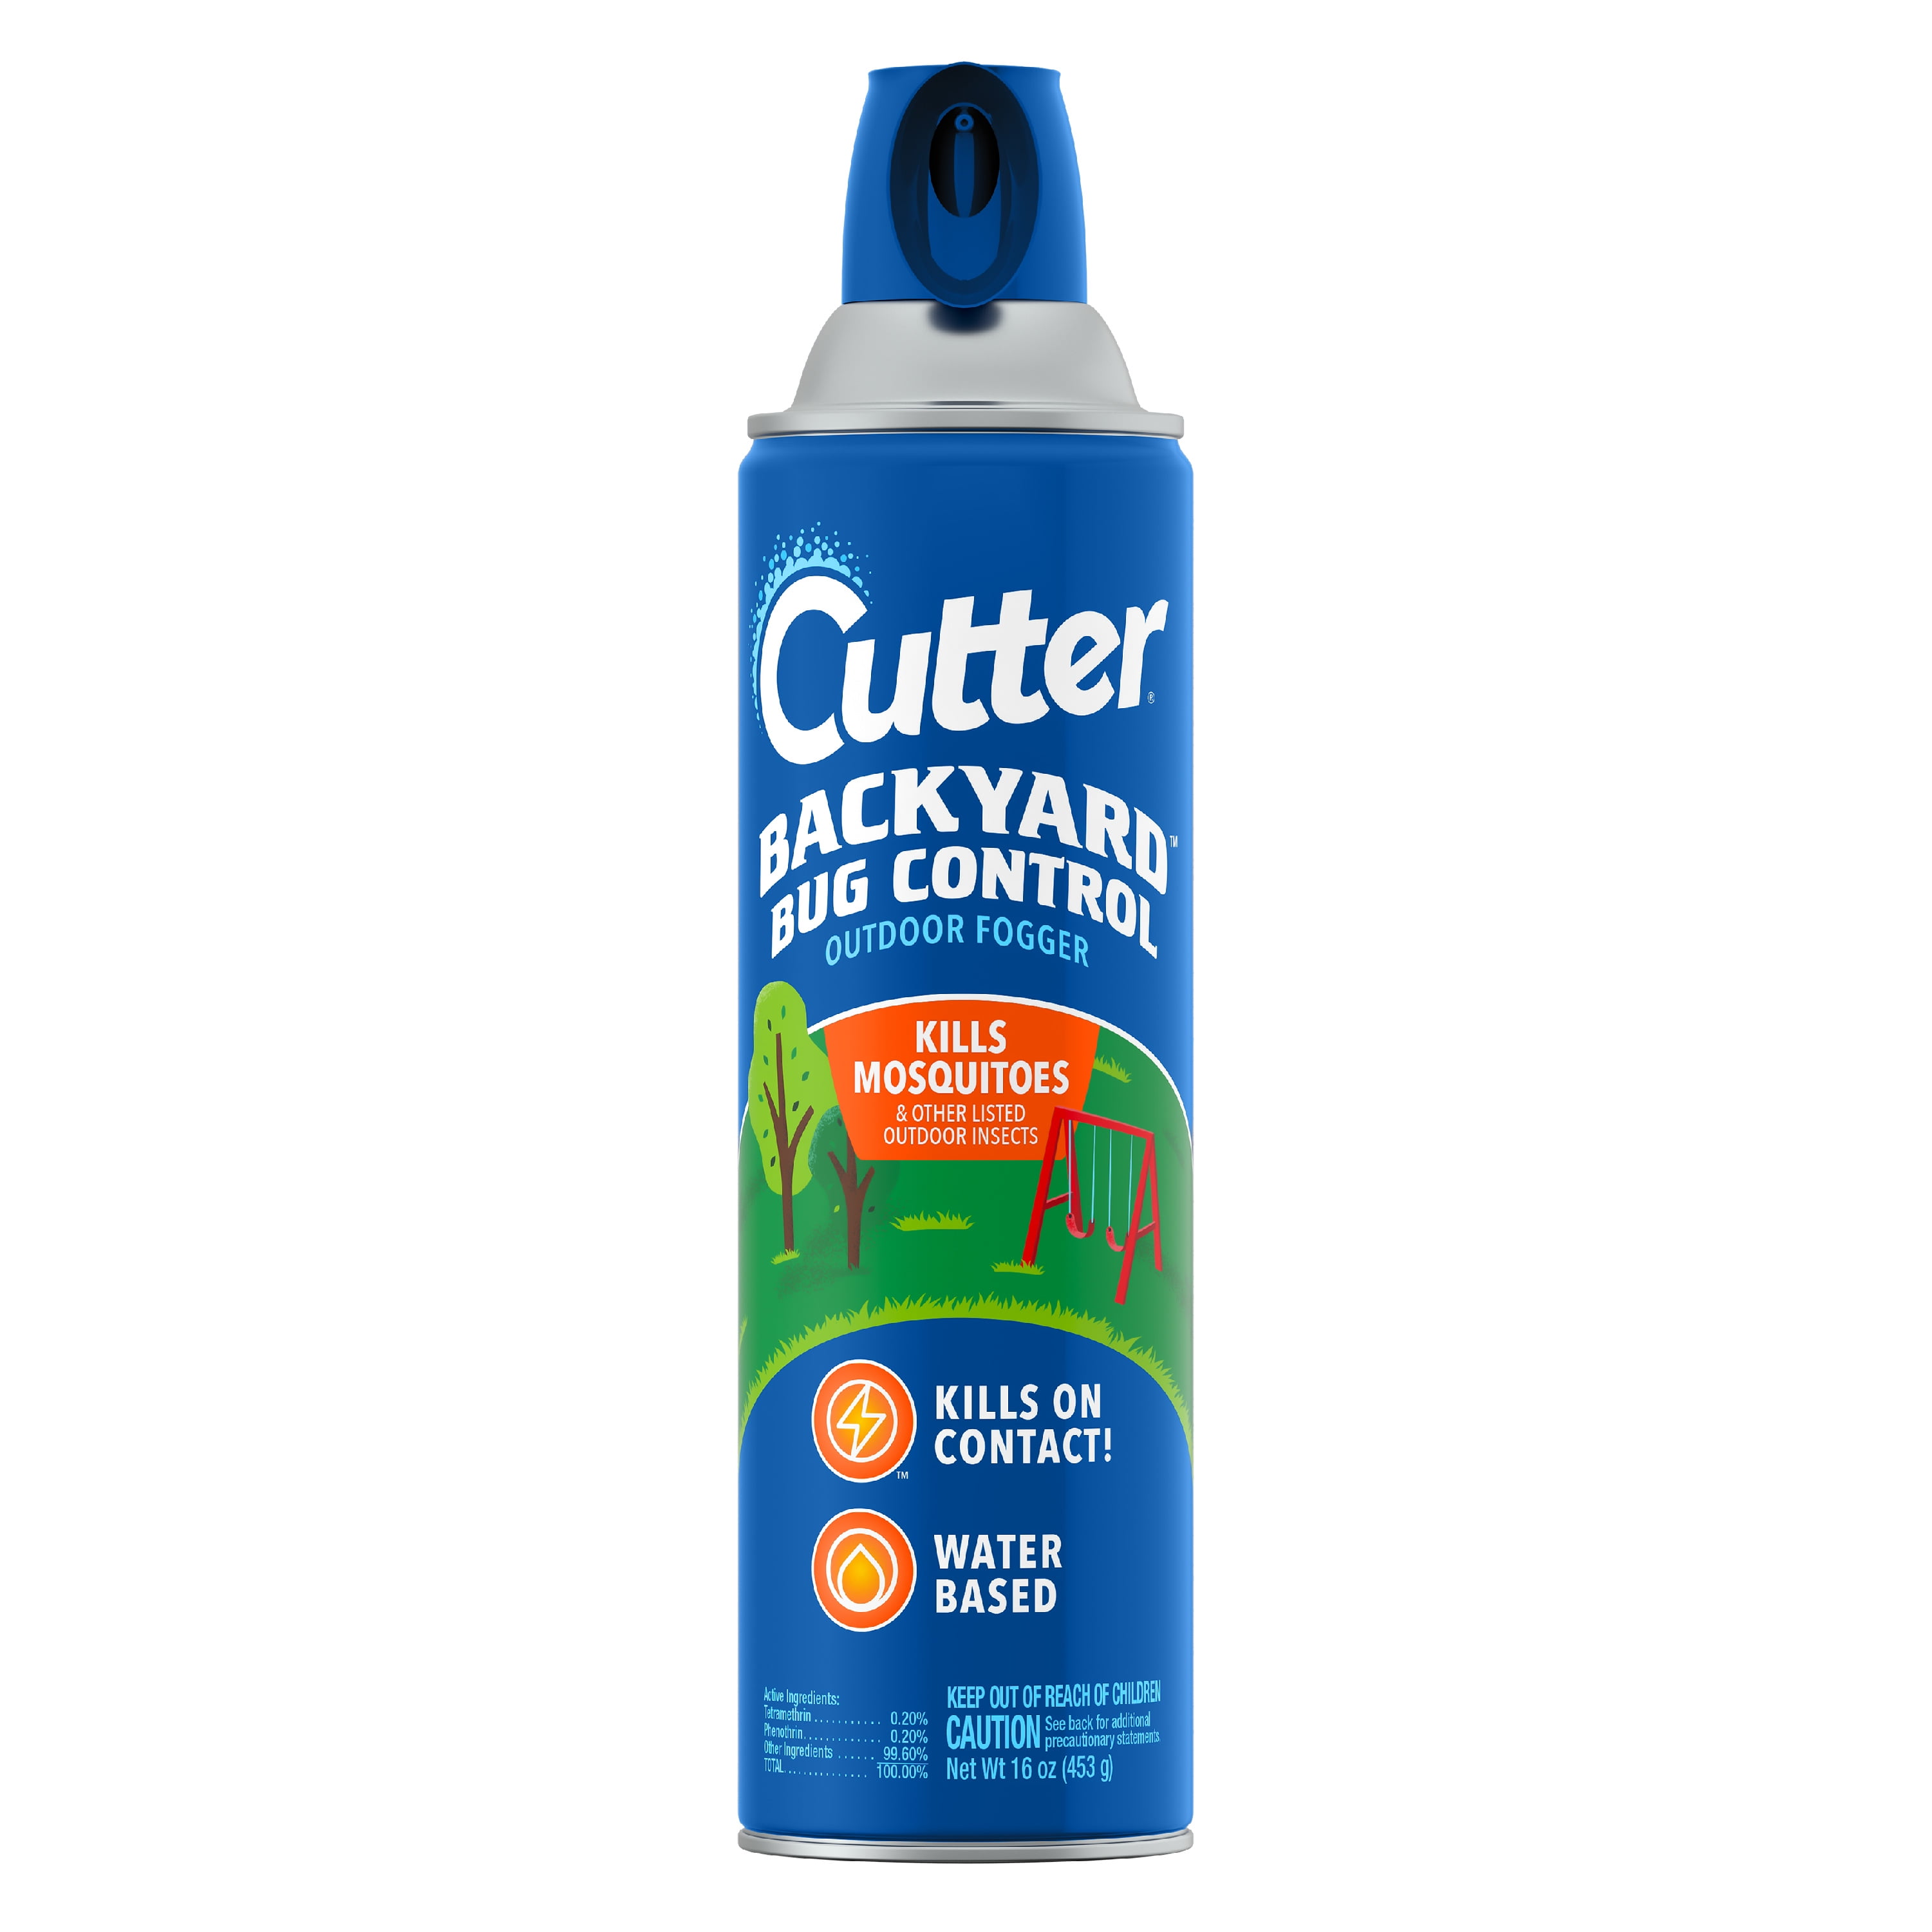 Cutter Backyard Bug Control Outdoor Fogger 16 Ounces